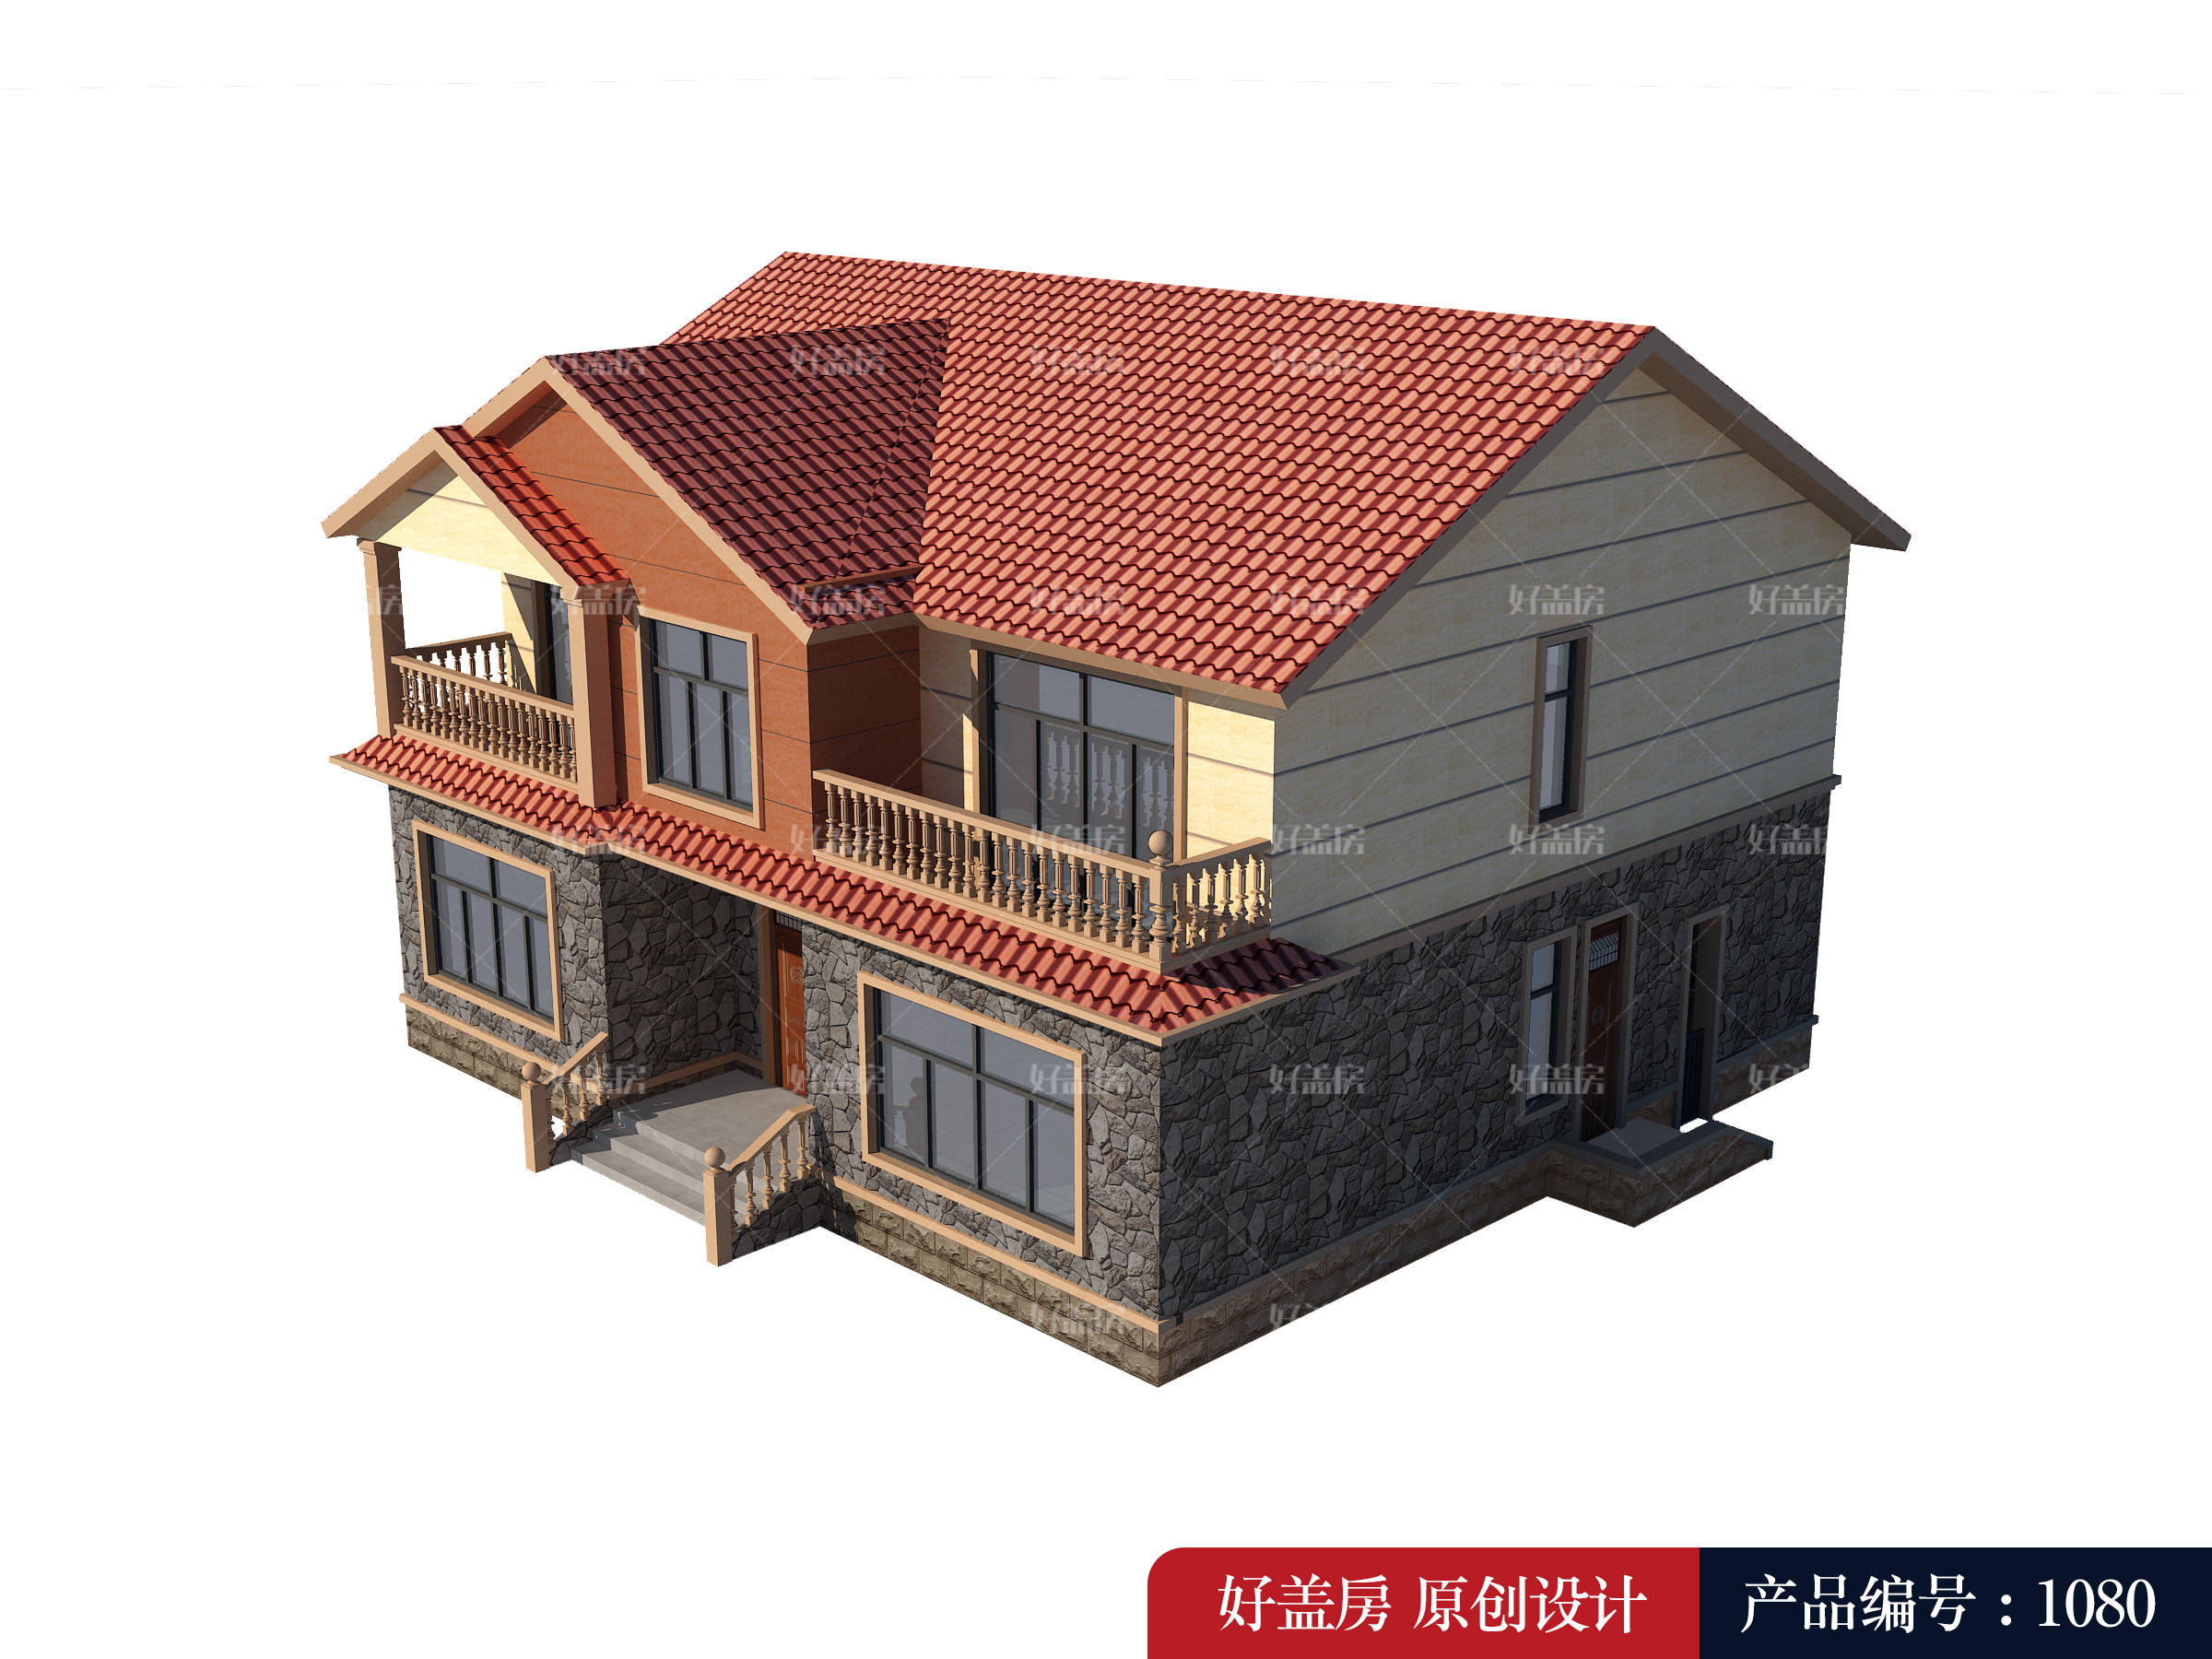 
新农村住宅设计图纸-jbo竞博官网(图3)